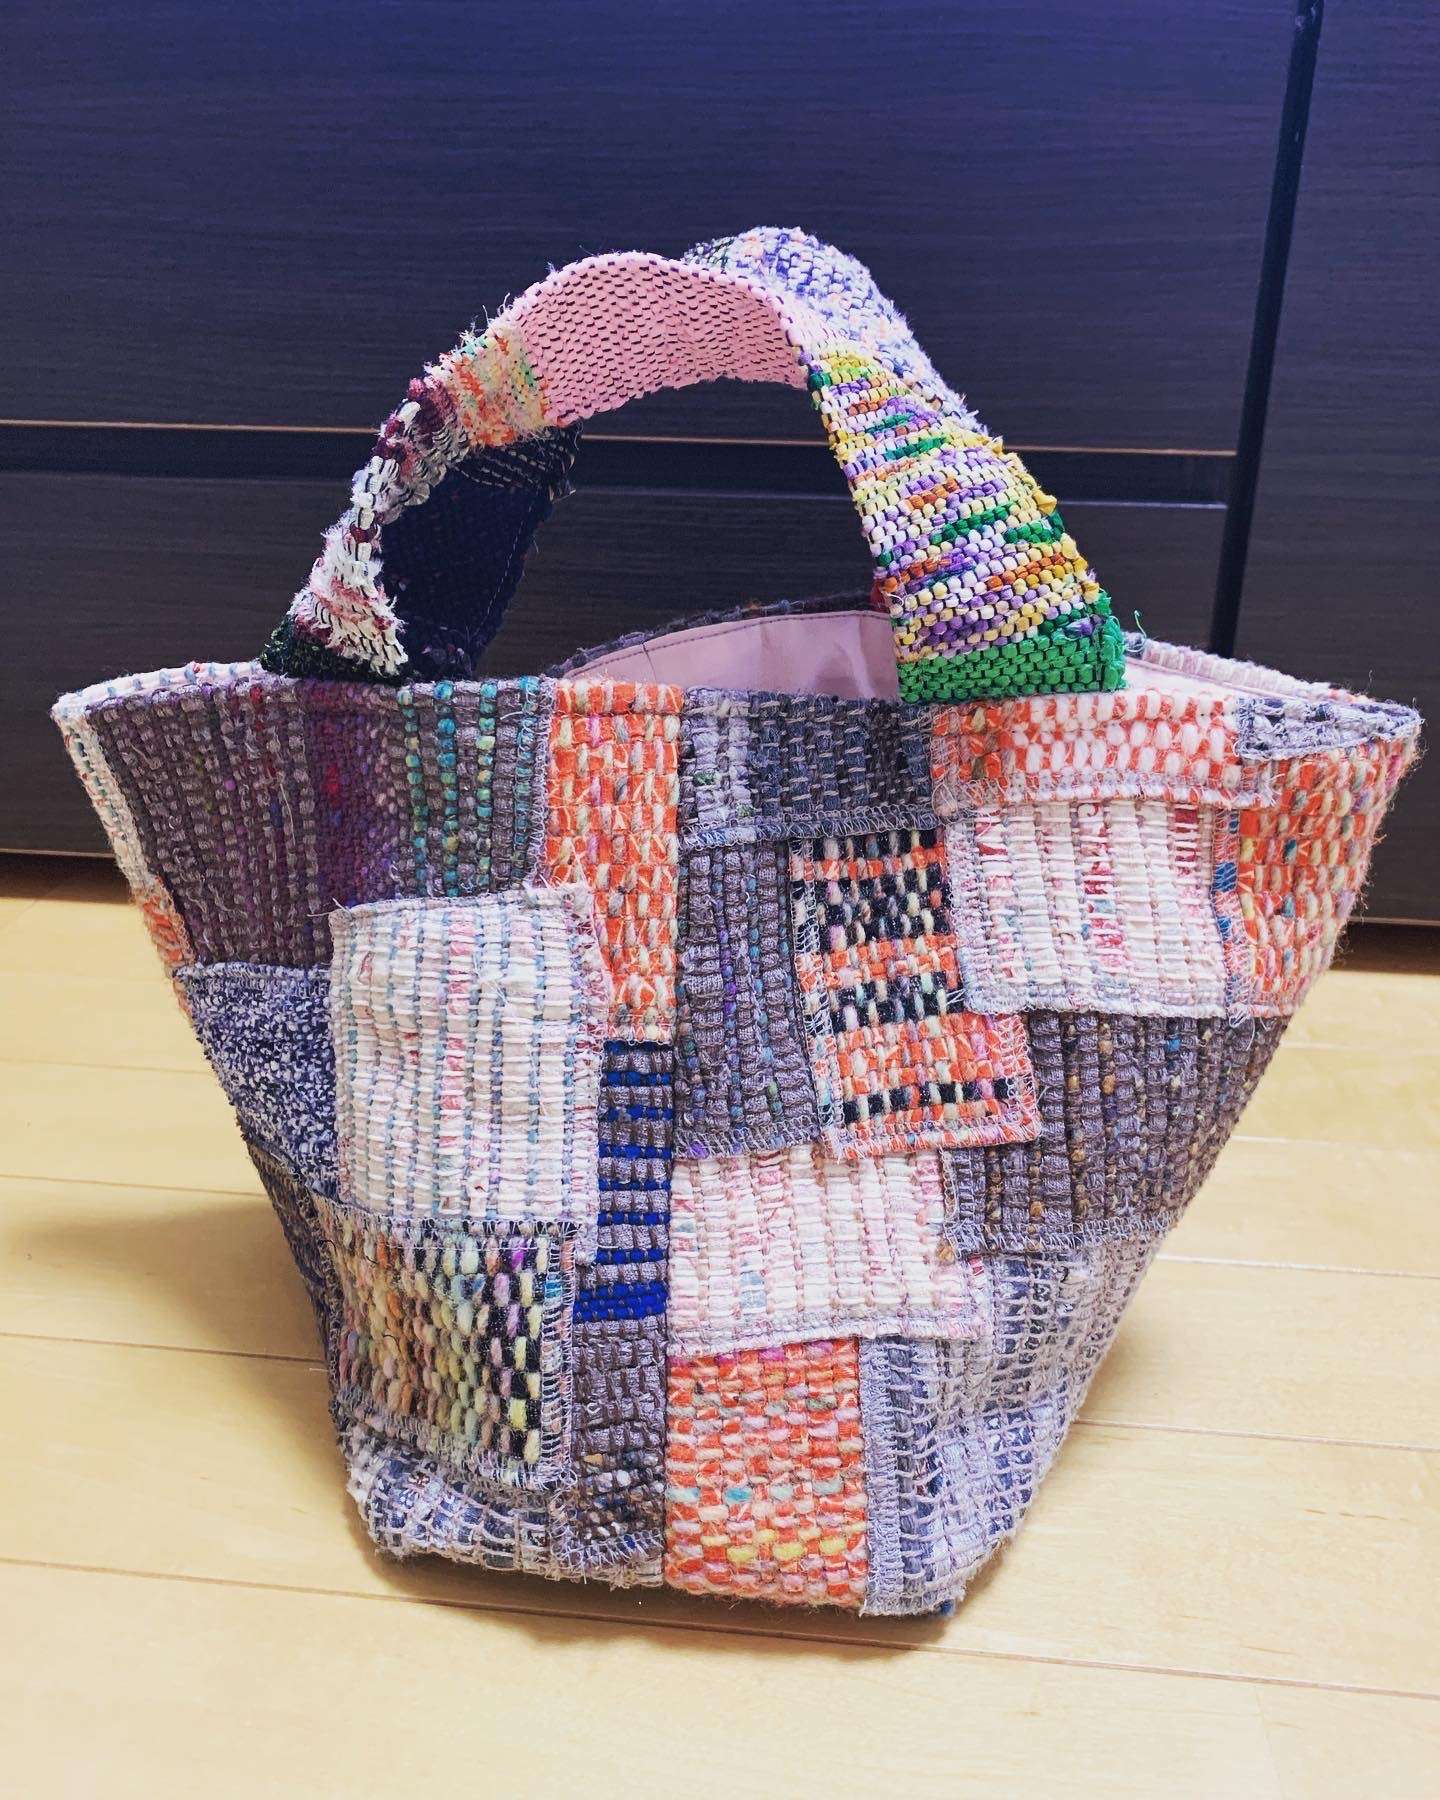 さきおり工房浩子】裂き織りバッグ作り方も簡単！ | 裂き織り教室の雰囲気や生徒様たちの作品の制作過程をブログで配信 |  神奈川の手織り教室・さきおり工房浩子